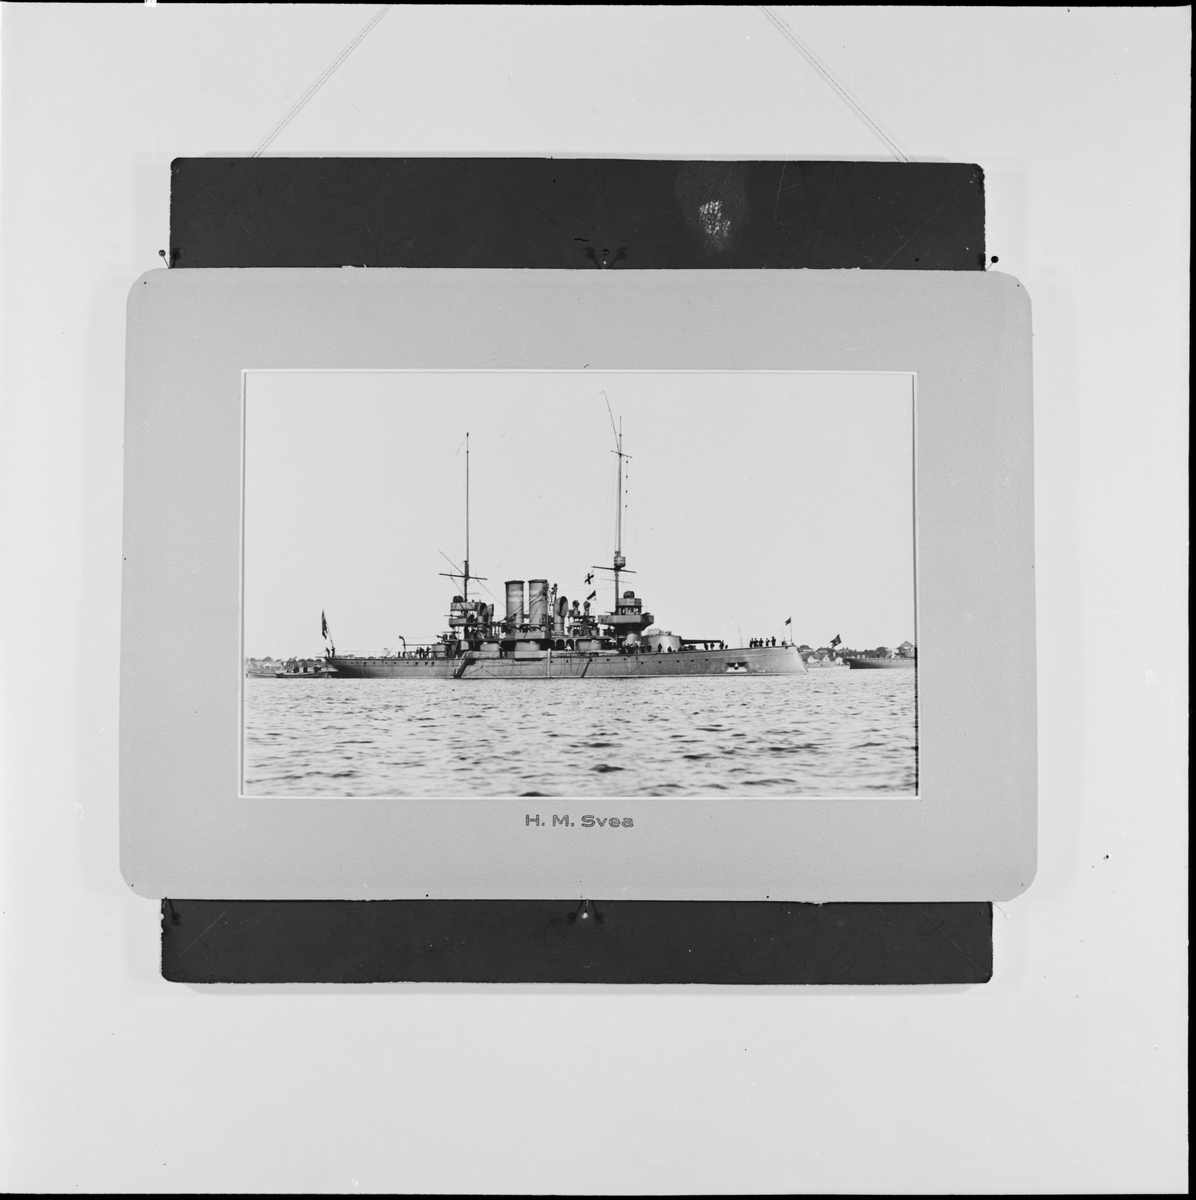 Reproduktion av en bild som visar pansarbåten Svea före ombyggnaden.